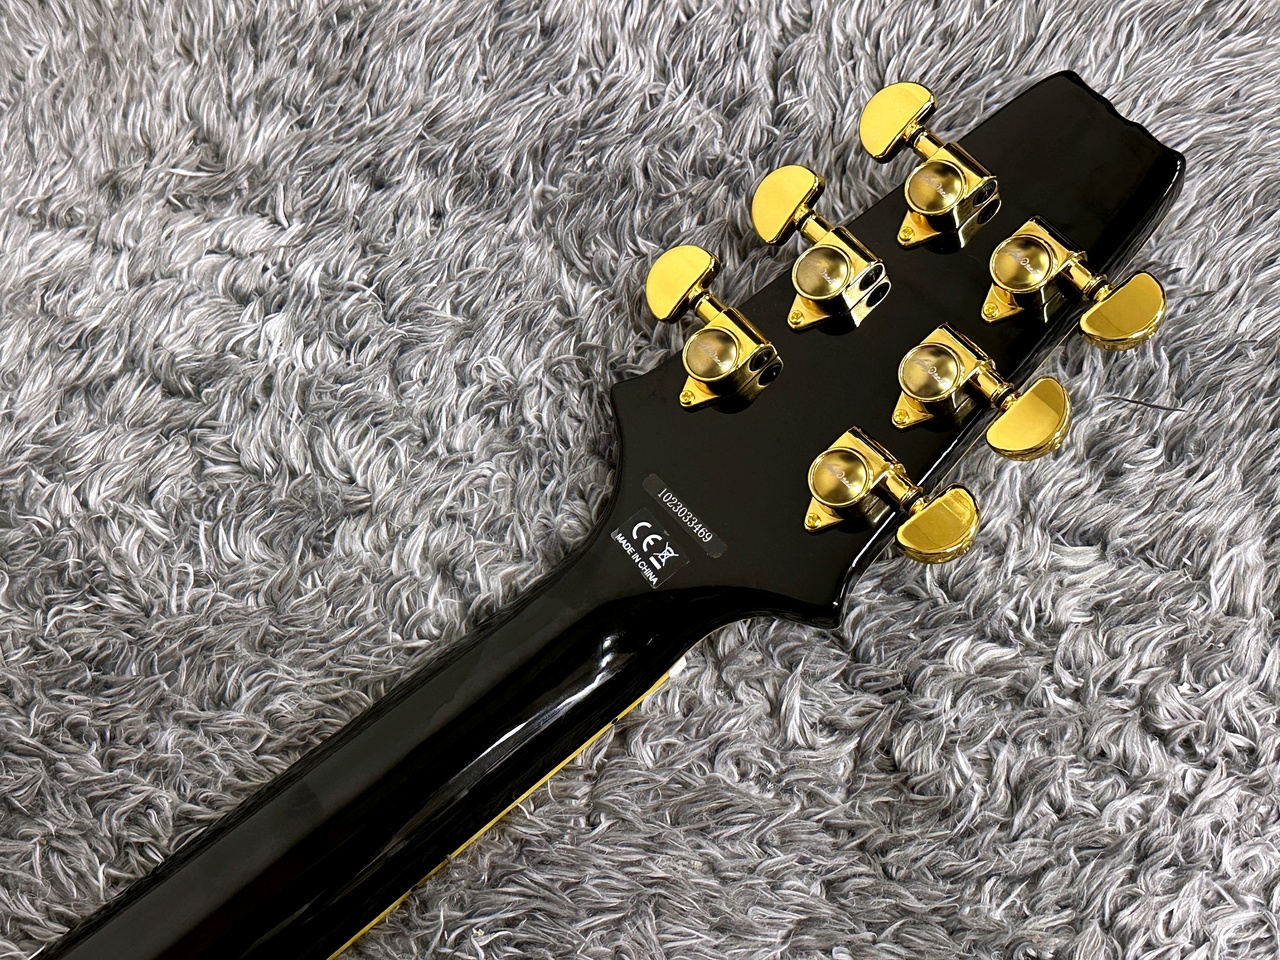 AriaProII PE-350PF AGBK Aged Black ピックアップ仕様 PEシリーズ レスポールタイプ エレキギター エイジド ブラック